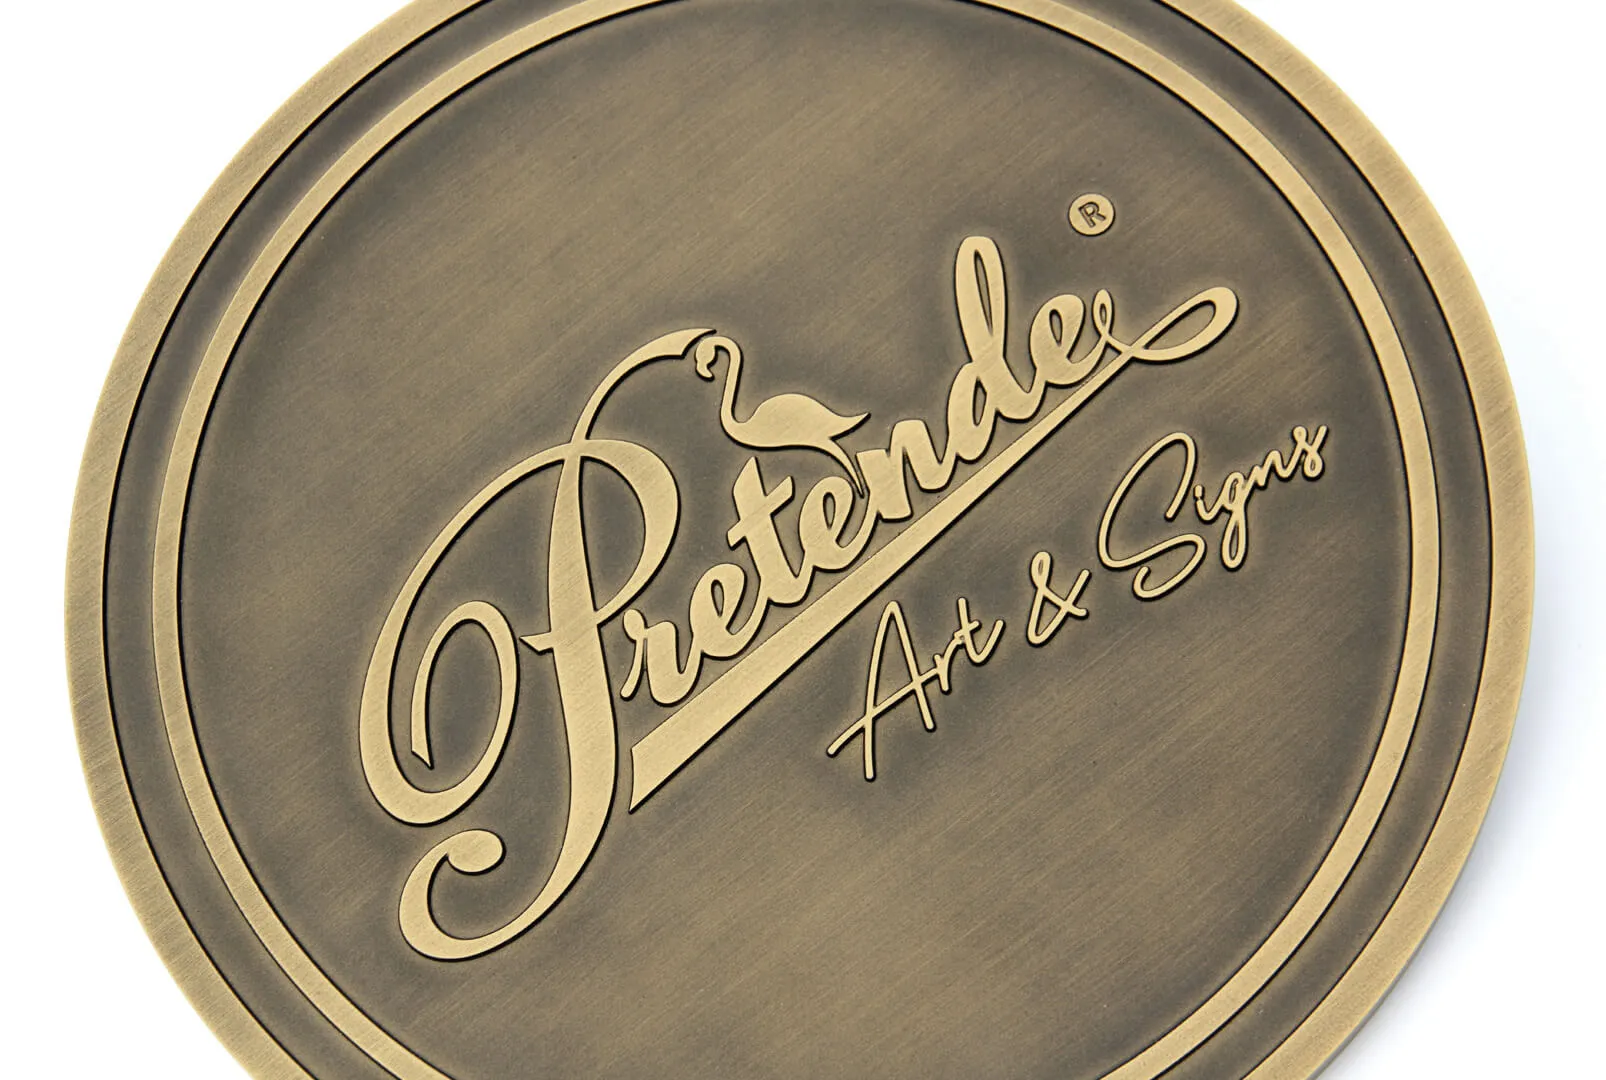 Placa de fundición Pretende - Placa de bronce fundido en 3D con el logotipo de Pretende